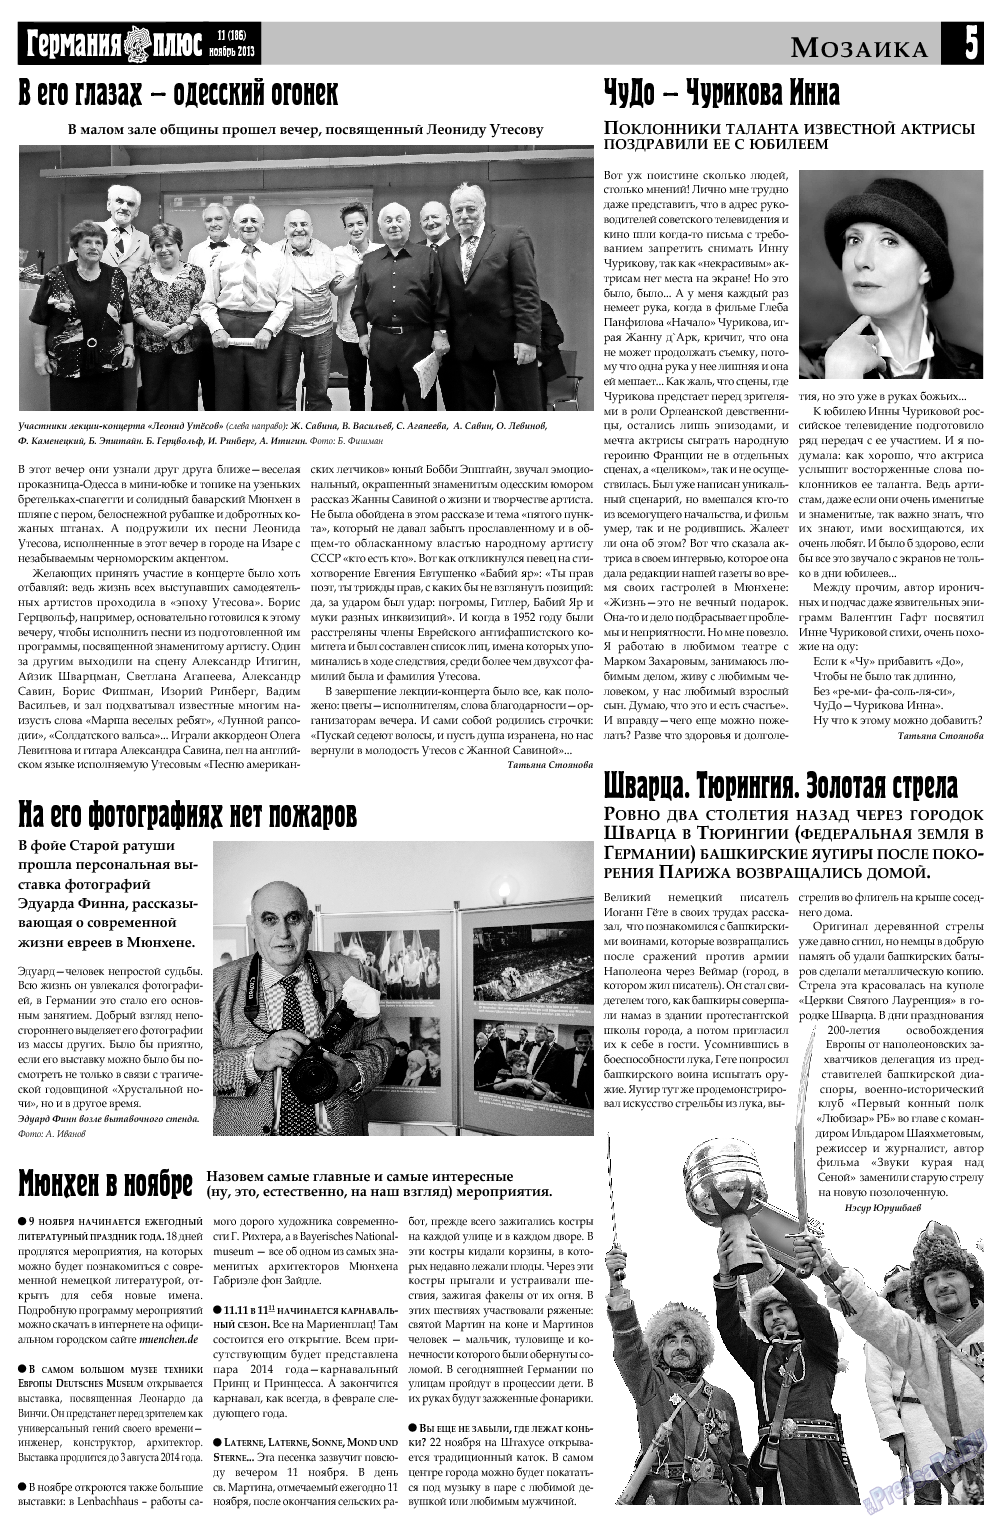 Германия плюс, газета. 2013 №11 стр.5